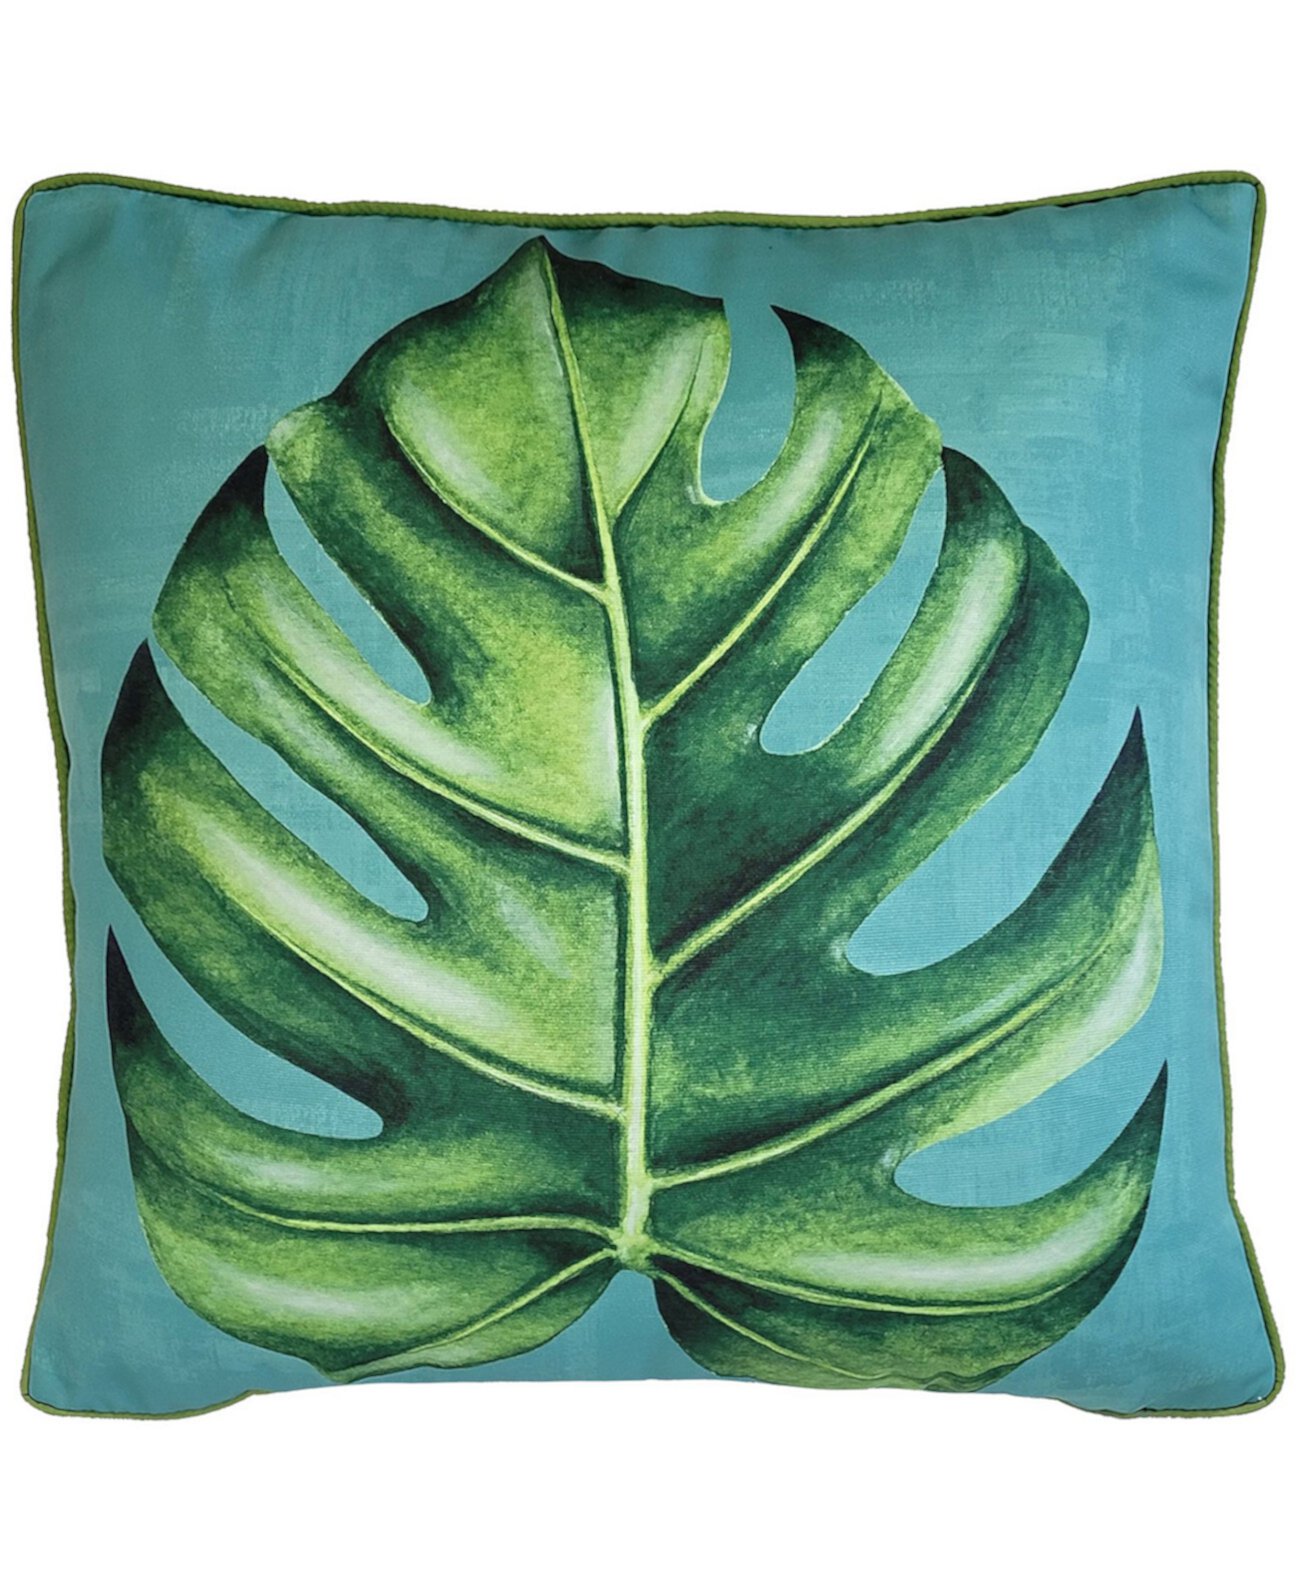 NYBG Декоративная подушка с принтом листьев Монстеры для использования в помещении и на открытом воздухе, 20 x 20 дюймов Edie@Home